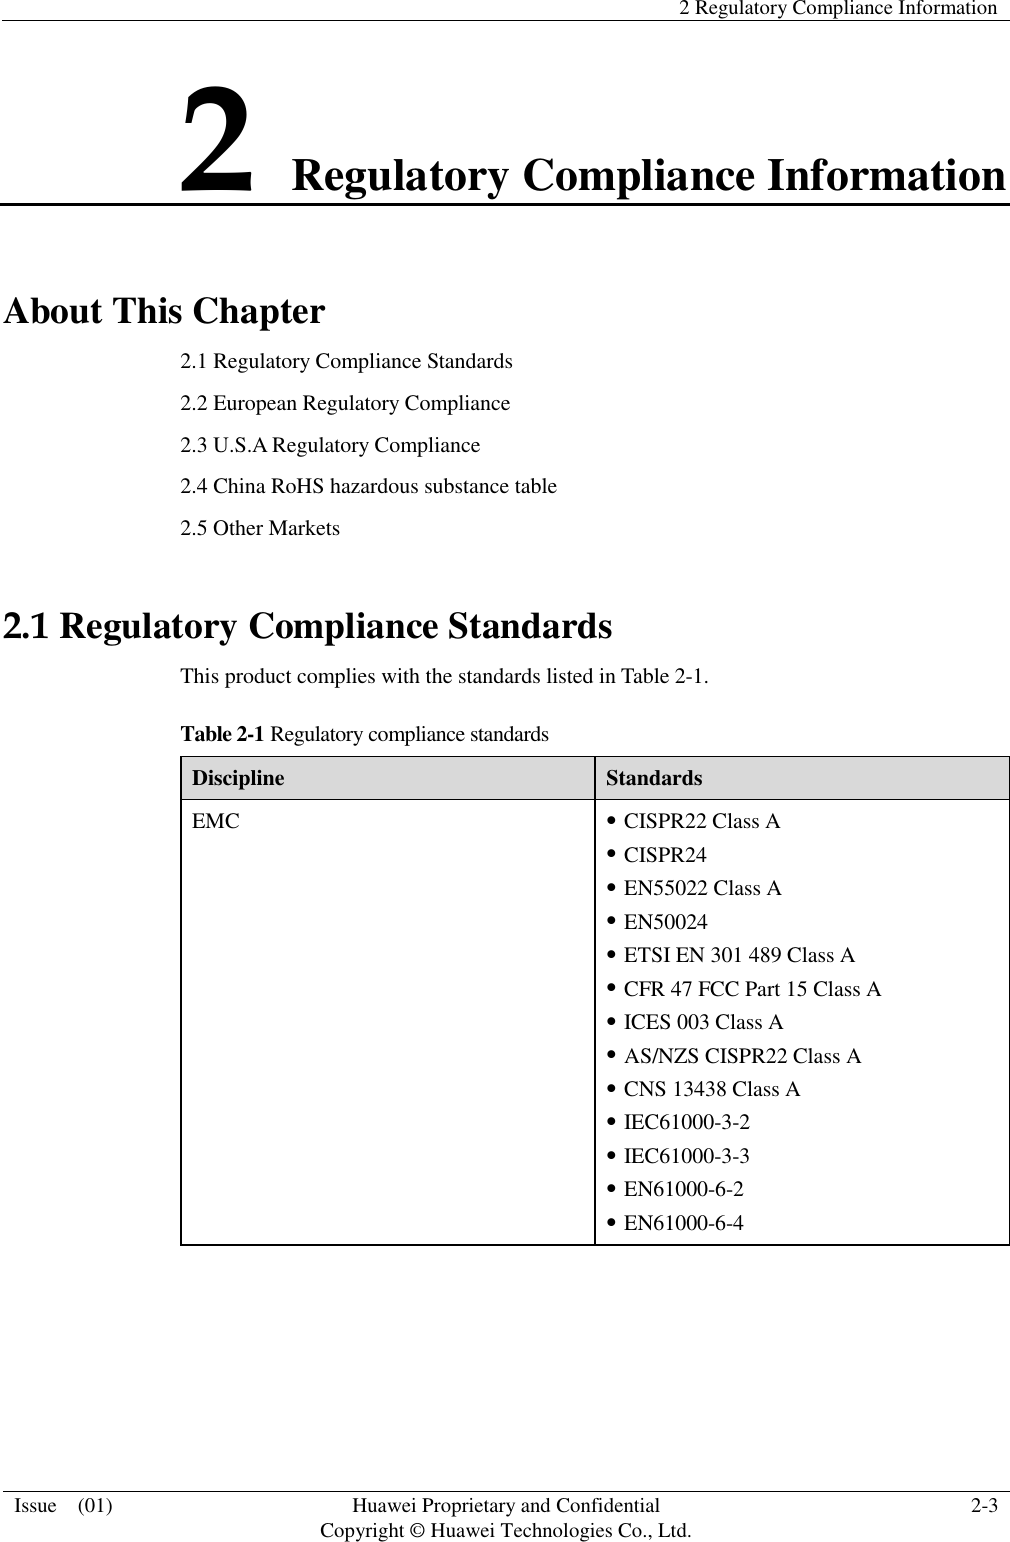   2 Regulatory Compliance Information  Issue    (01) Huawei Proprietary and Confidential                                     Copyright © Huawei Technologies Co., Ltd. 2-3  2 Regulatory Compliance Information About This Chapter 2.1 Regulatory Compliance Standards 2.2 European Regulatory Compliance 2.3 U.S.A Regulatory Compliance 2.4 China RoHS hazardous substance table 2.5 Other Markets 2.1 Regulatory Compliance Standards This product complies with the standards listed in Table 2-1. Table 2-1 Regulatory compliance standards Discipline Standards EMC  CISPR22 Class A  CISPR24  EN55022 Class A  EN50024  ETSI EN 301 489 Class A  CFR 47 FCC Part 15 Class A  ICES 003 Class A  AS/NZS CISPR22 Class A  CNS 13438 Class A  IEC61000-3-2  IEC61000-3-3  EN61000-6-2  EN61000-6-4 